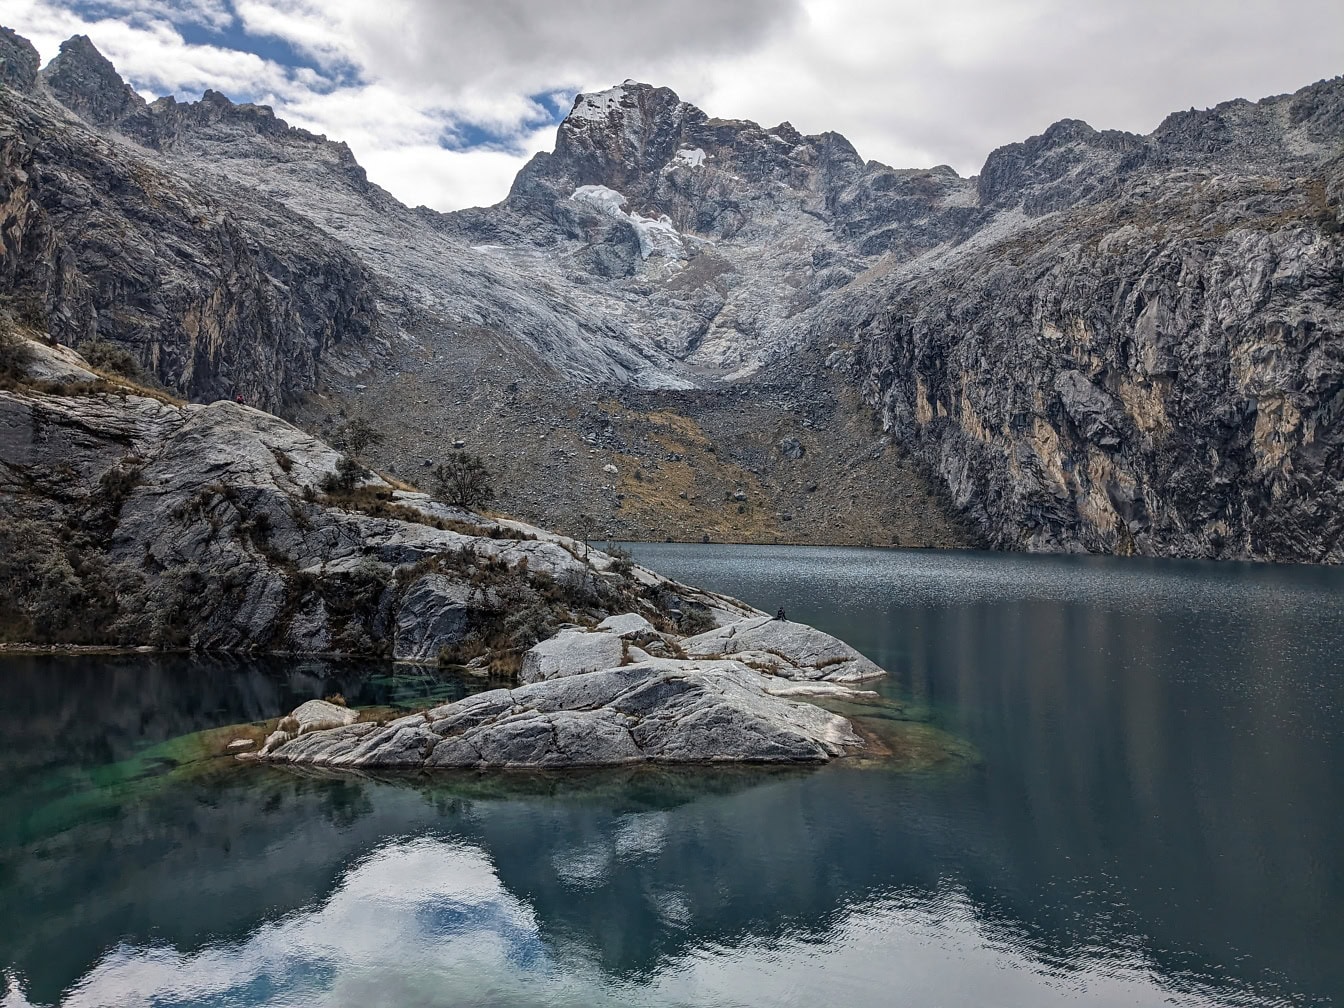 Чуруп или озеро Цуруп недалеко от Уараса на горном хребте Кордильера-Бланка в регионе Анкаш в Андах Перу